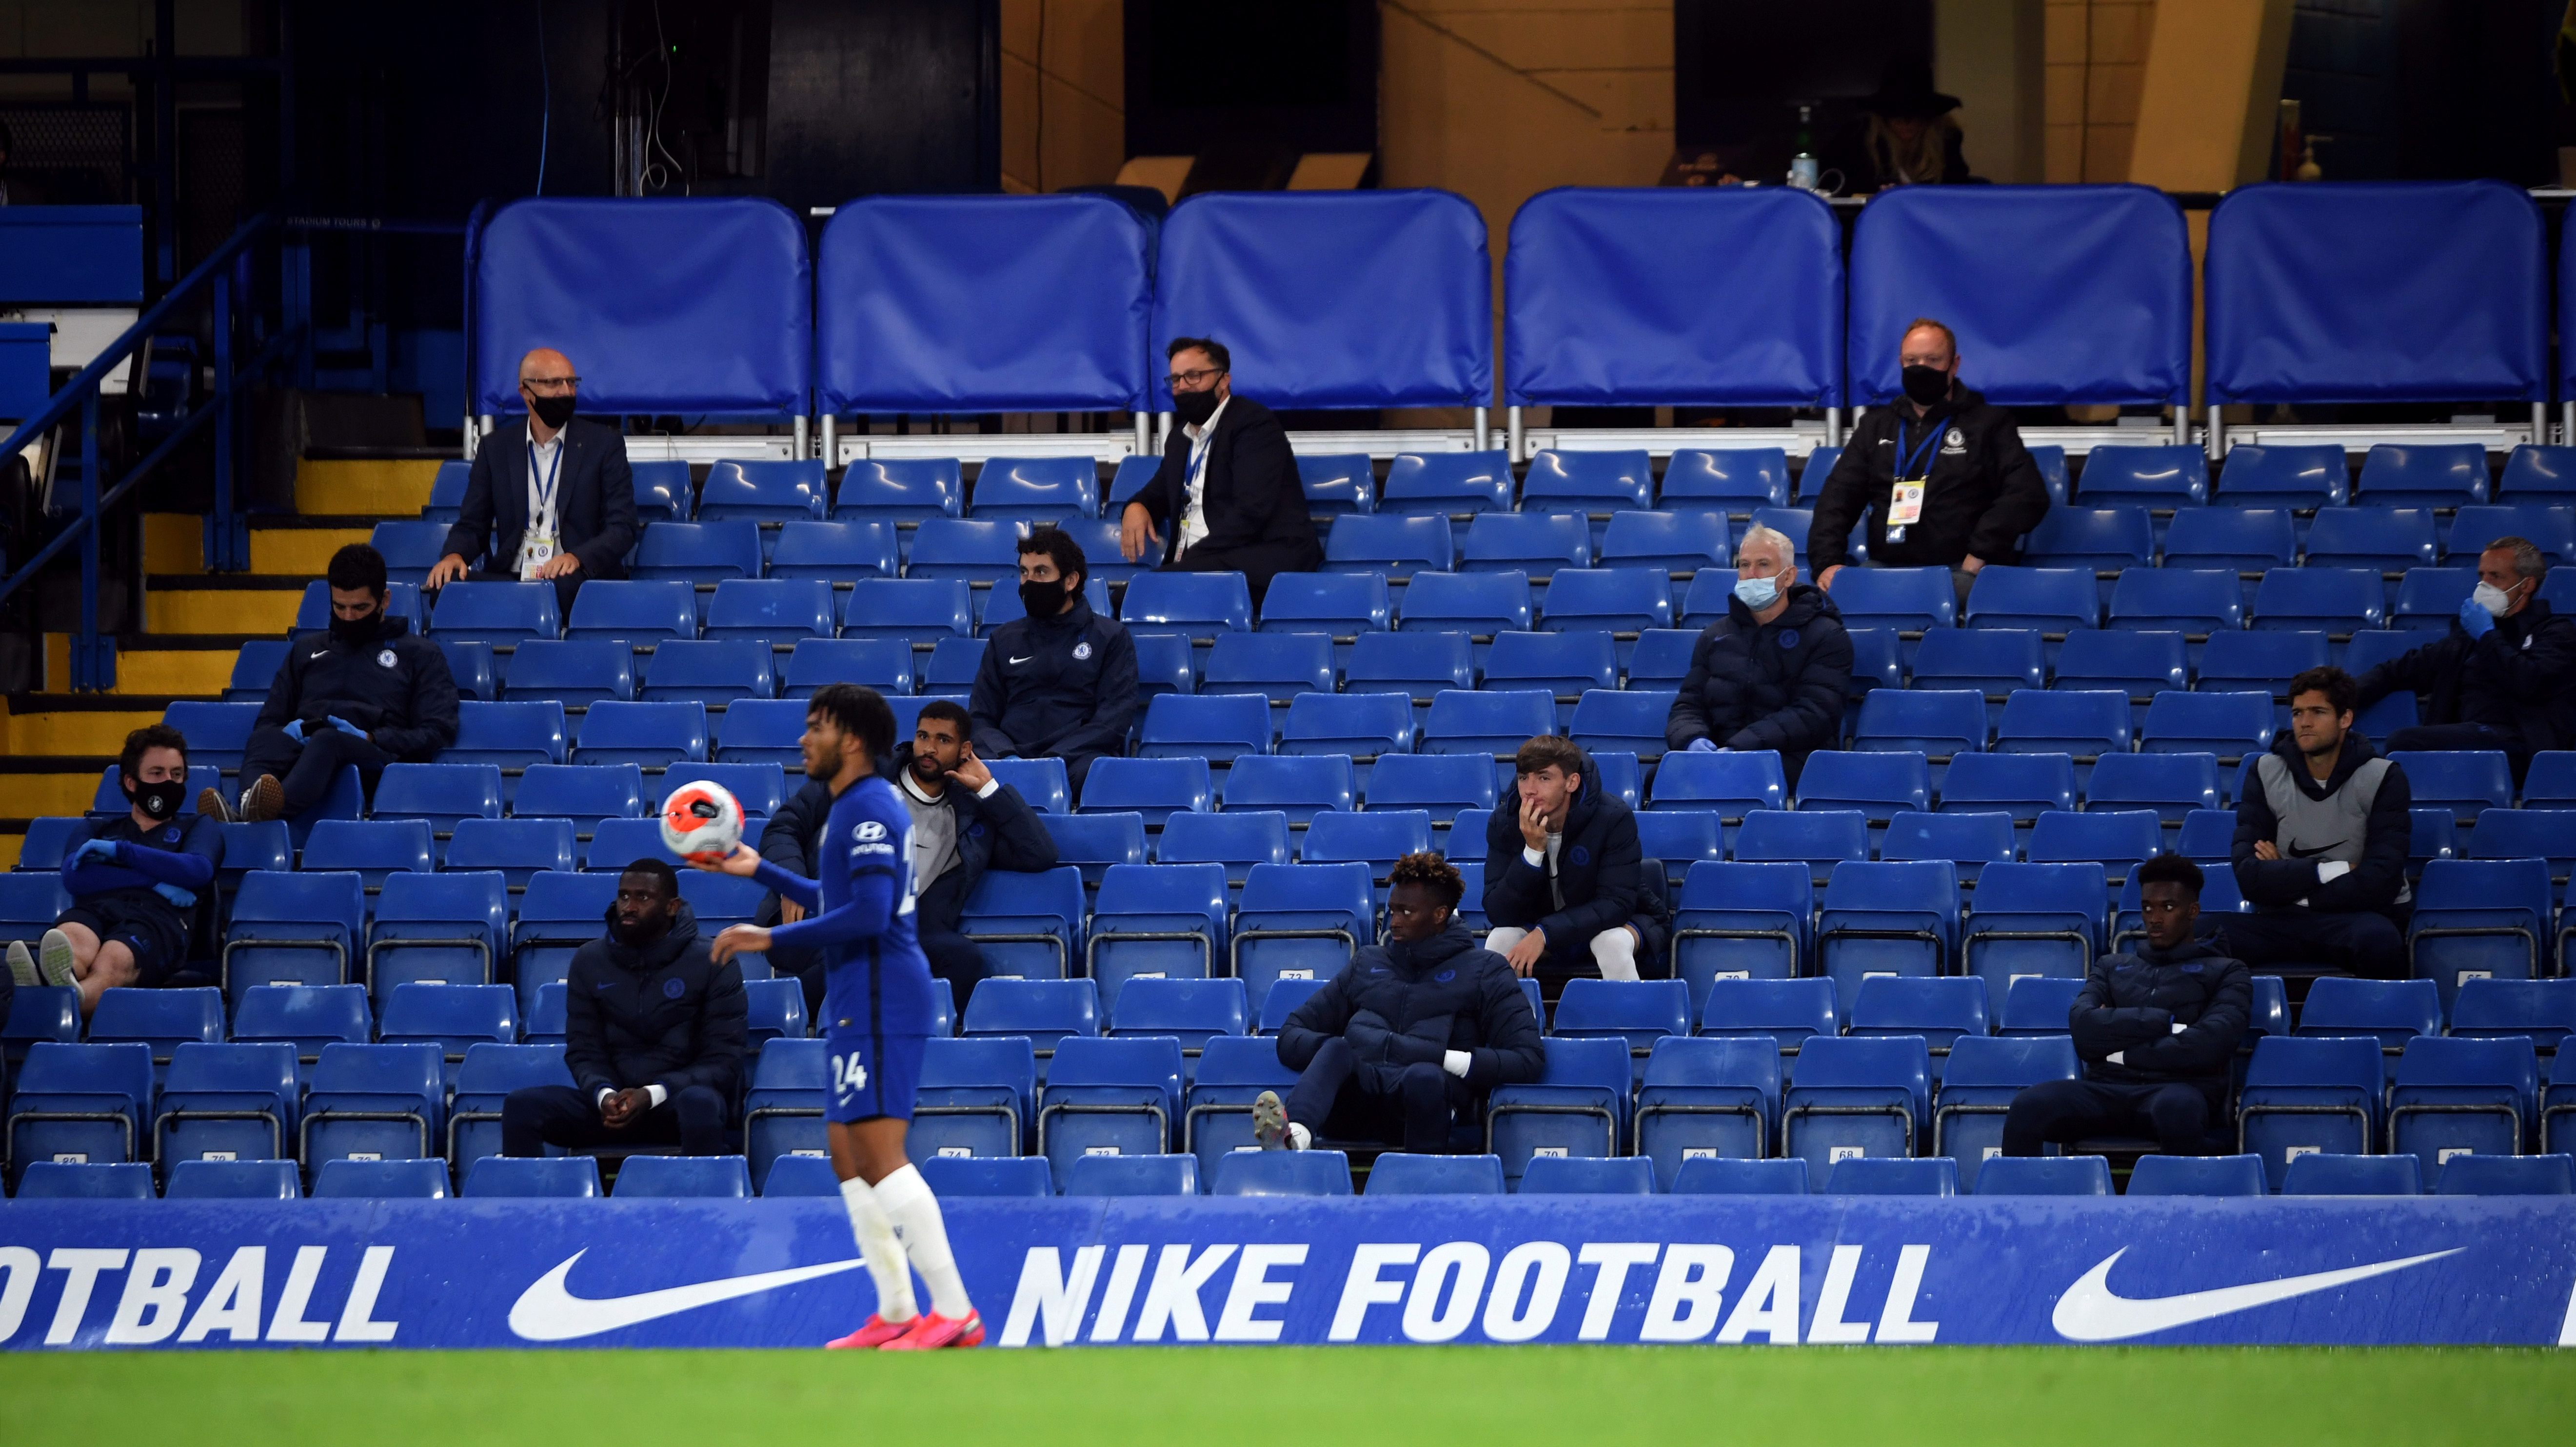 La nueva normalidad en el fútbol llegó al banco de suplentes con distanciamiento entre los sustitutos y tapabocas (Foto: Reuters)